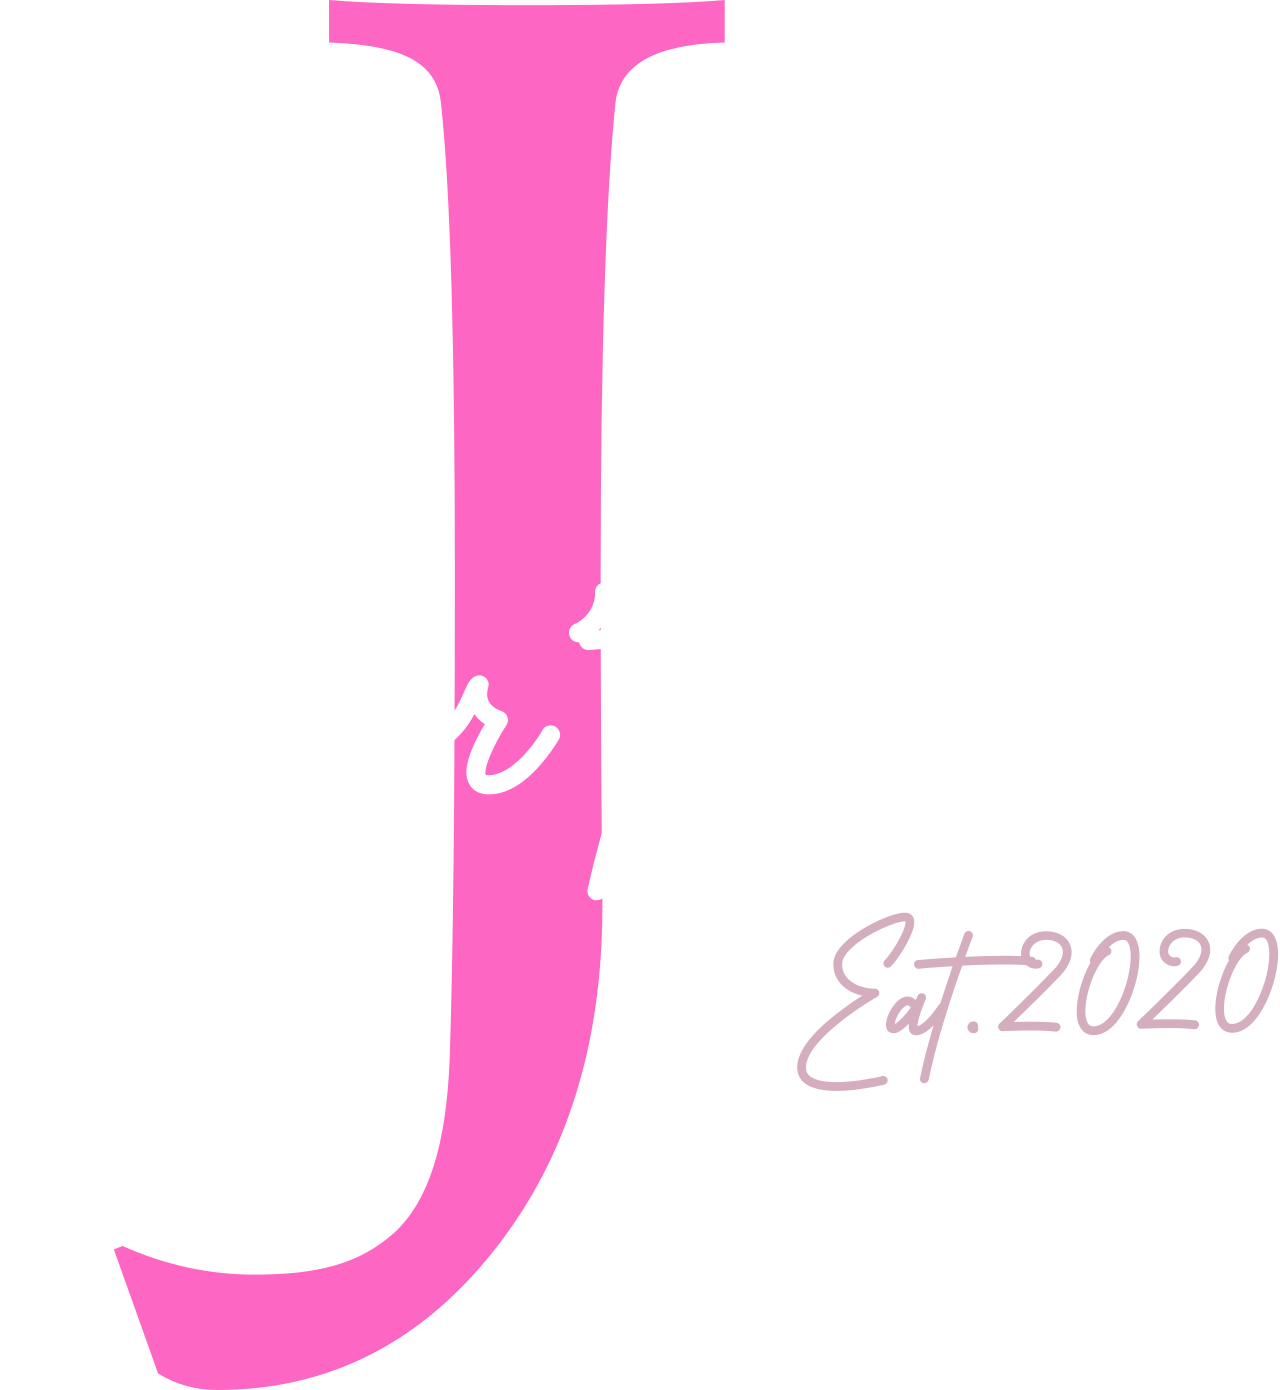 Jour’tique's logo